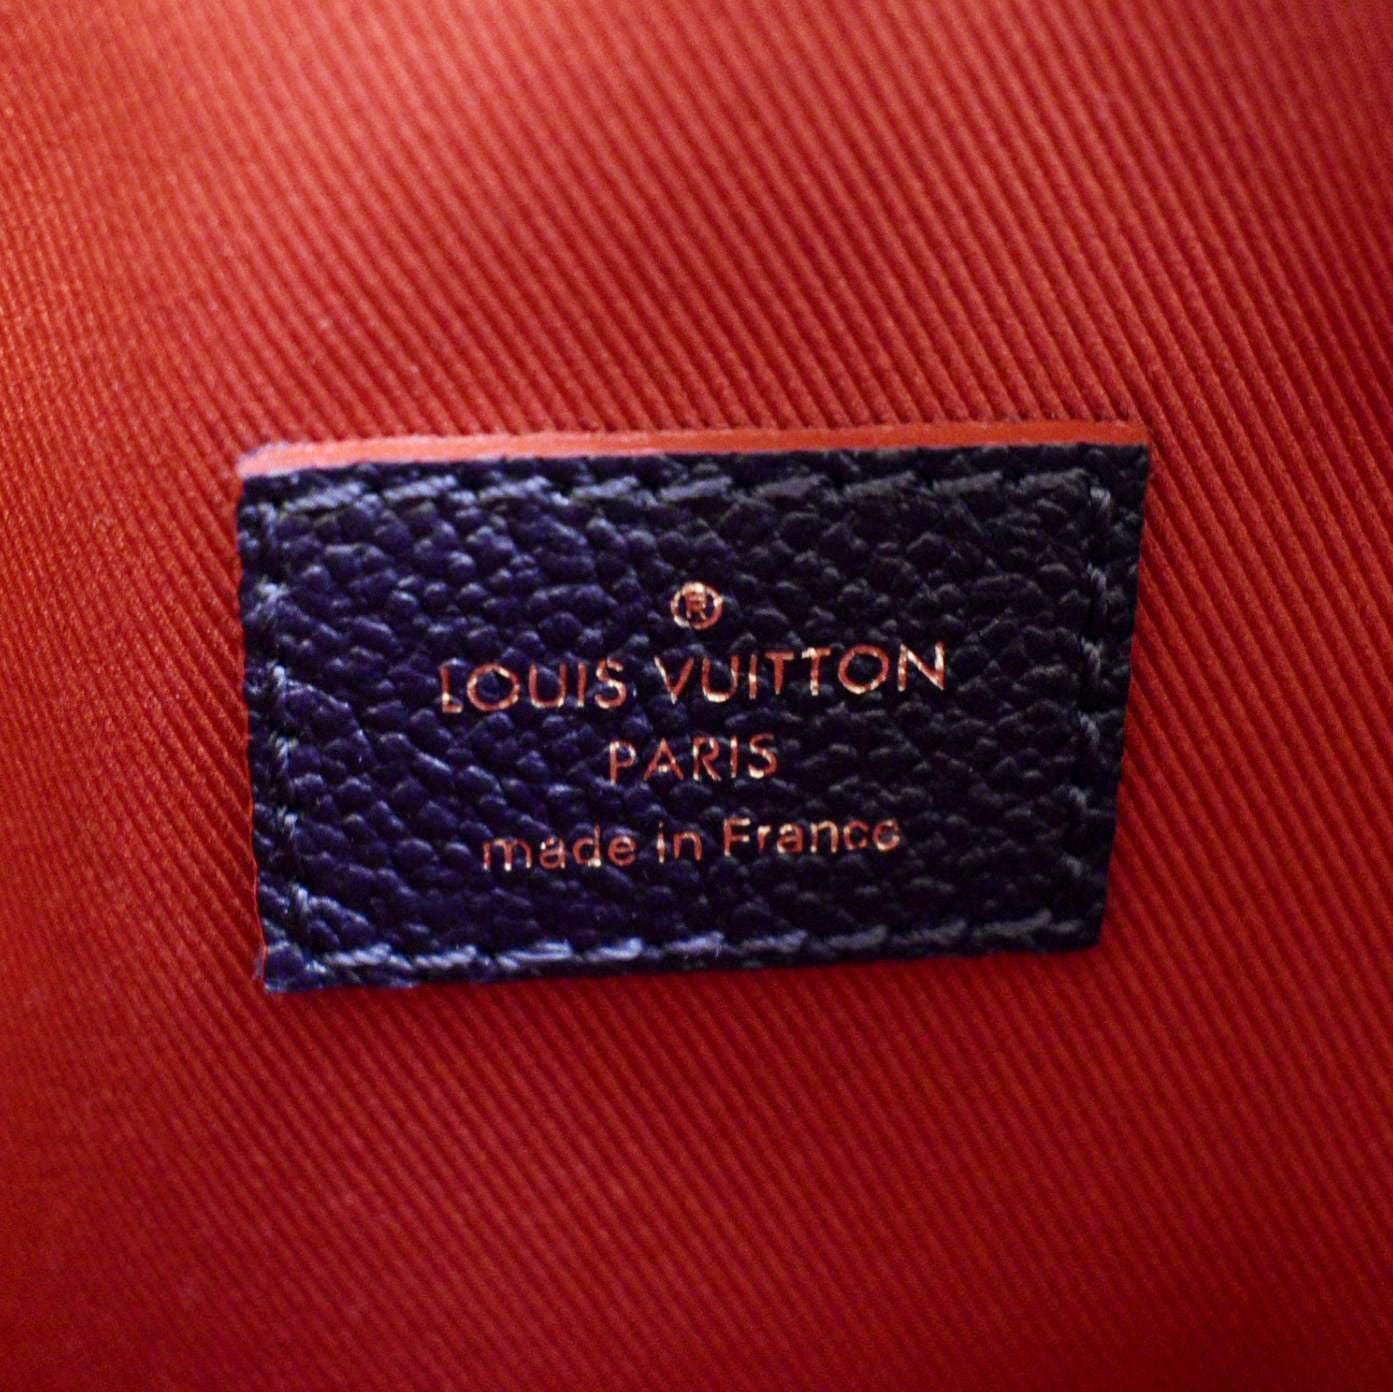 TLS - Title: Louis Vuitton Black Empreinte Ponthieu PM